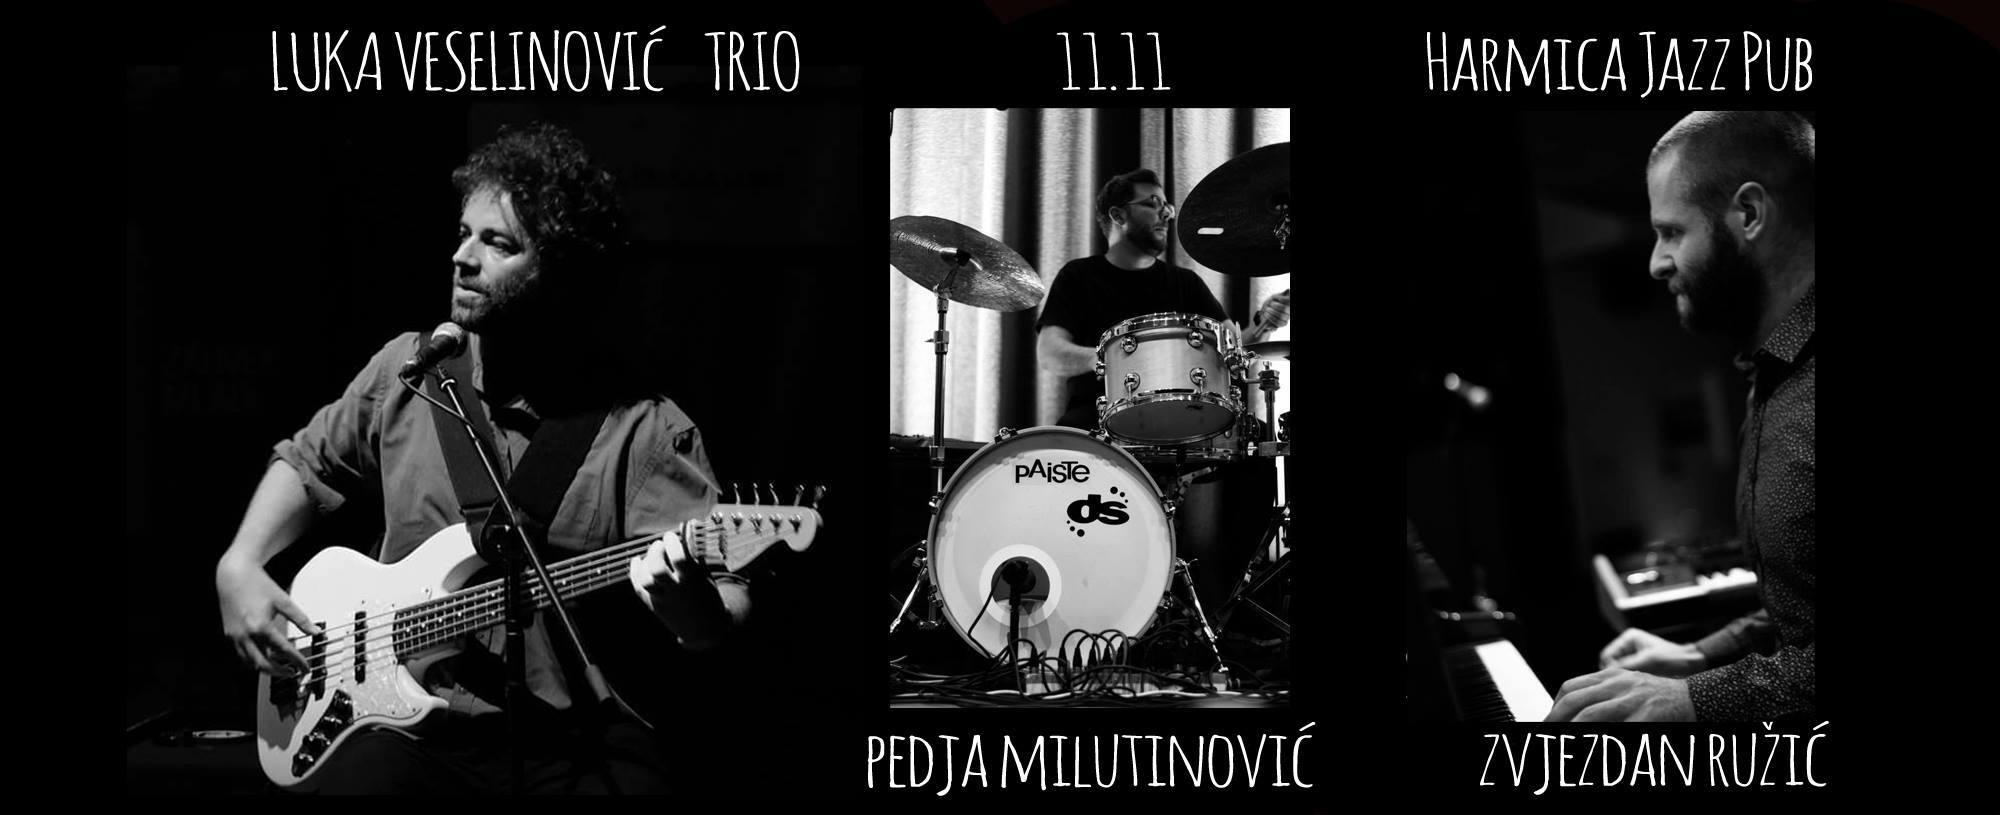 [:en]Luka Veselinović trio 11.11.2017. Harmica Jazz Pub